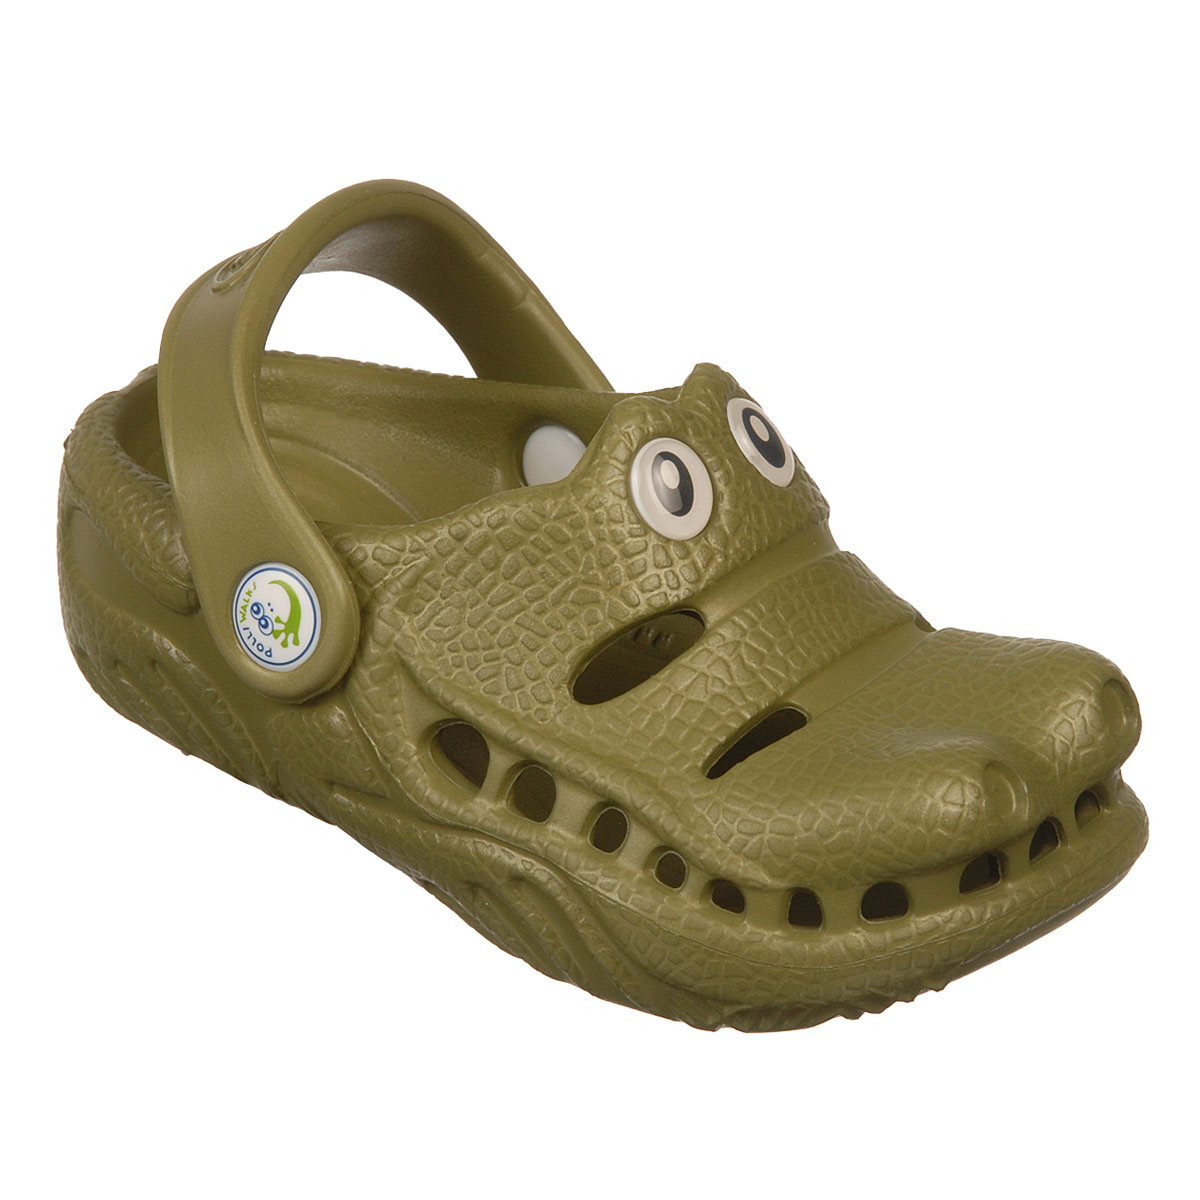 Polliwalks : Toddler shoes Gator ?Green # 6